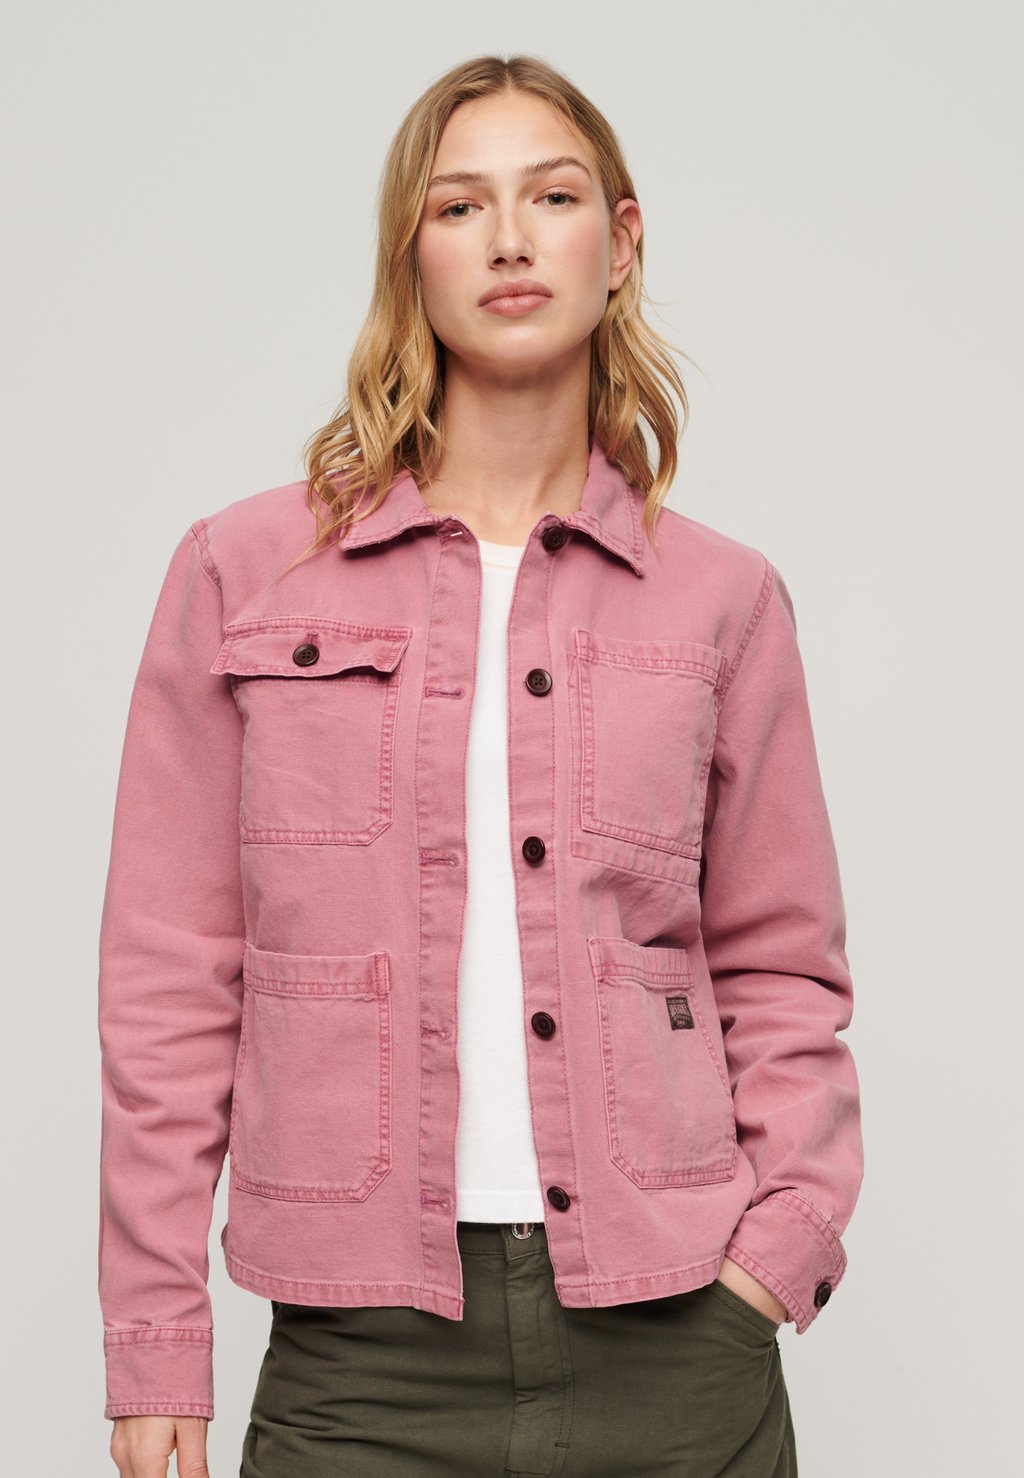 Джинсовая куртка FOUR POCKET CHORE Superdry, розовый куртка джинсовая ymc embroidered labour chore синий